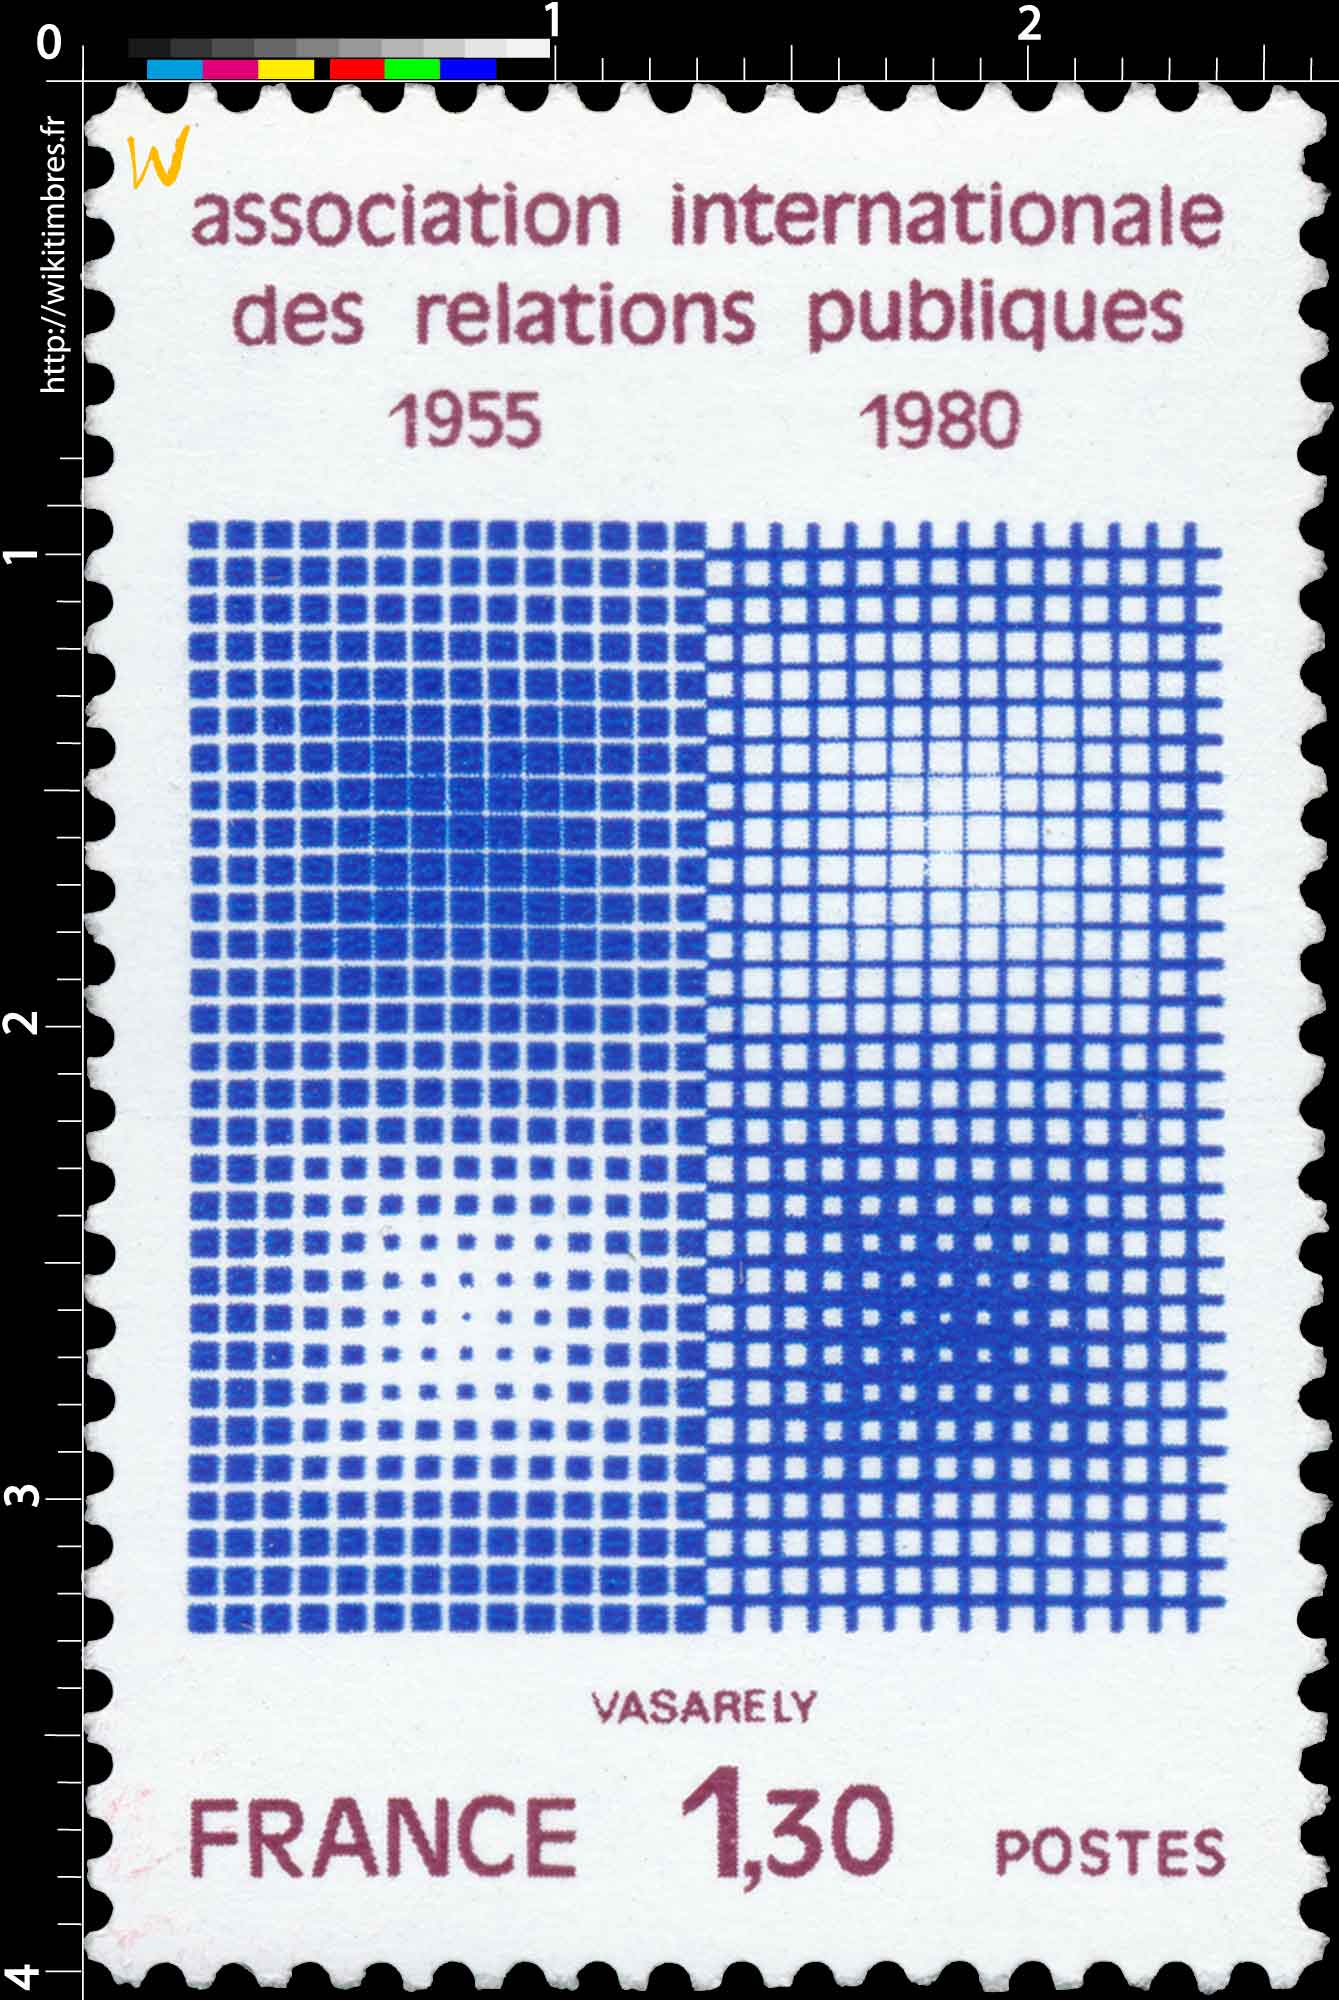 association internationale des relations publiques 1955-1980 VASARELY